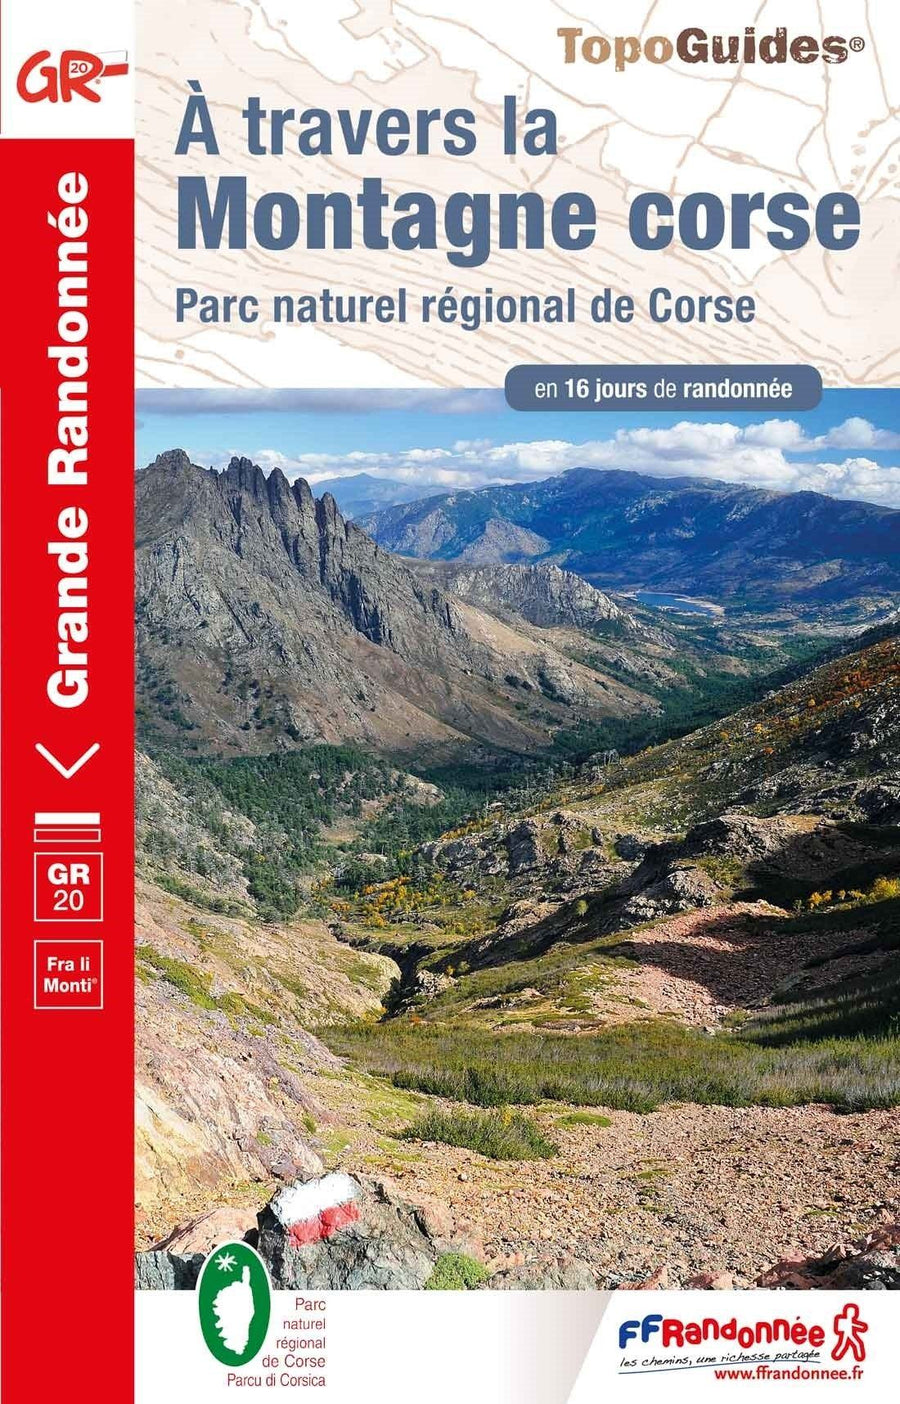 Topoguide de randonnée - A travers la montagne Corse GR20 | FFR guide de randonnée FFR - Fédération Française de Randonnée 